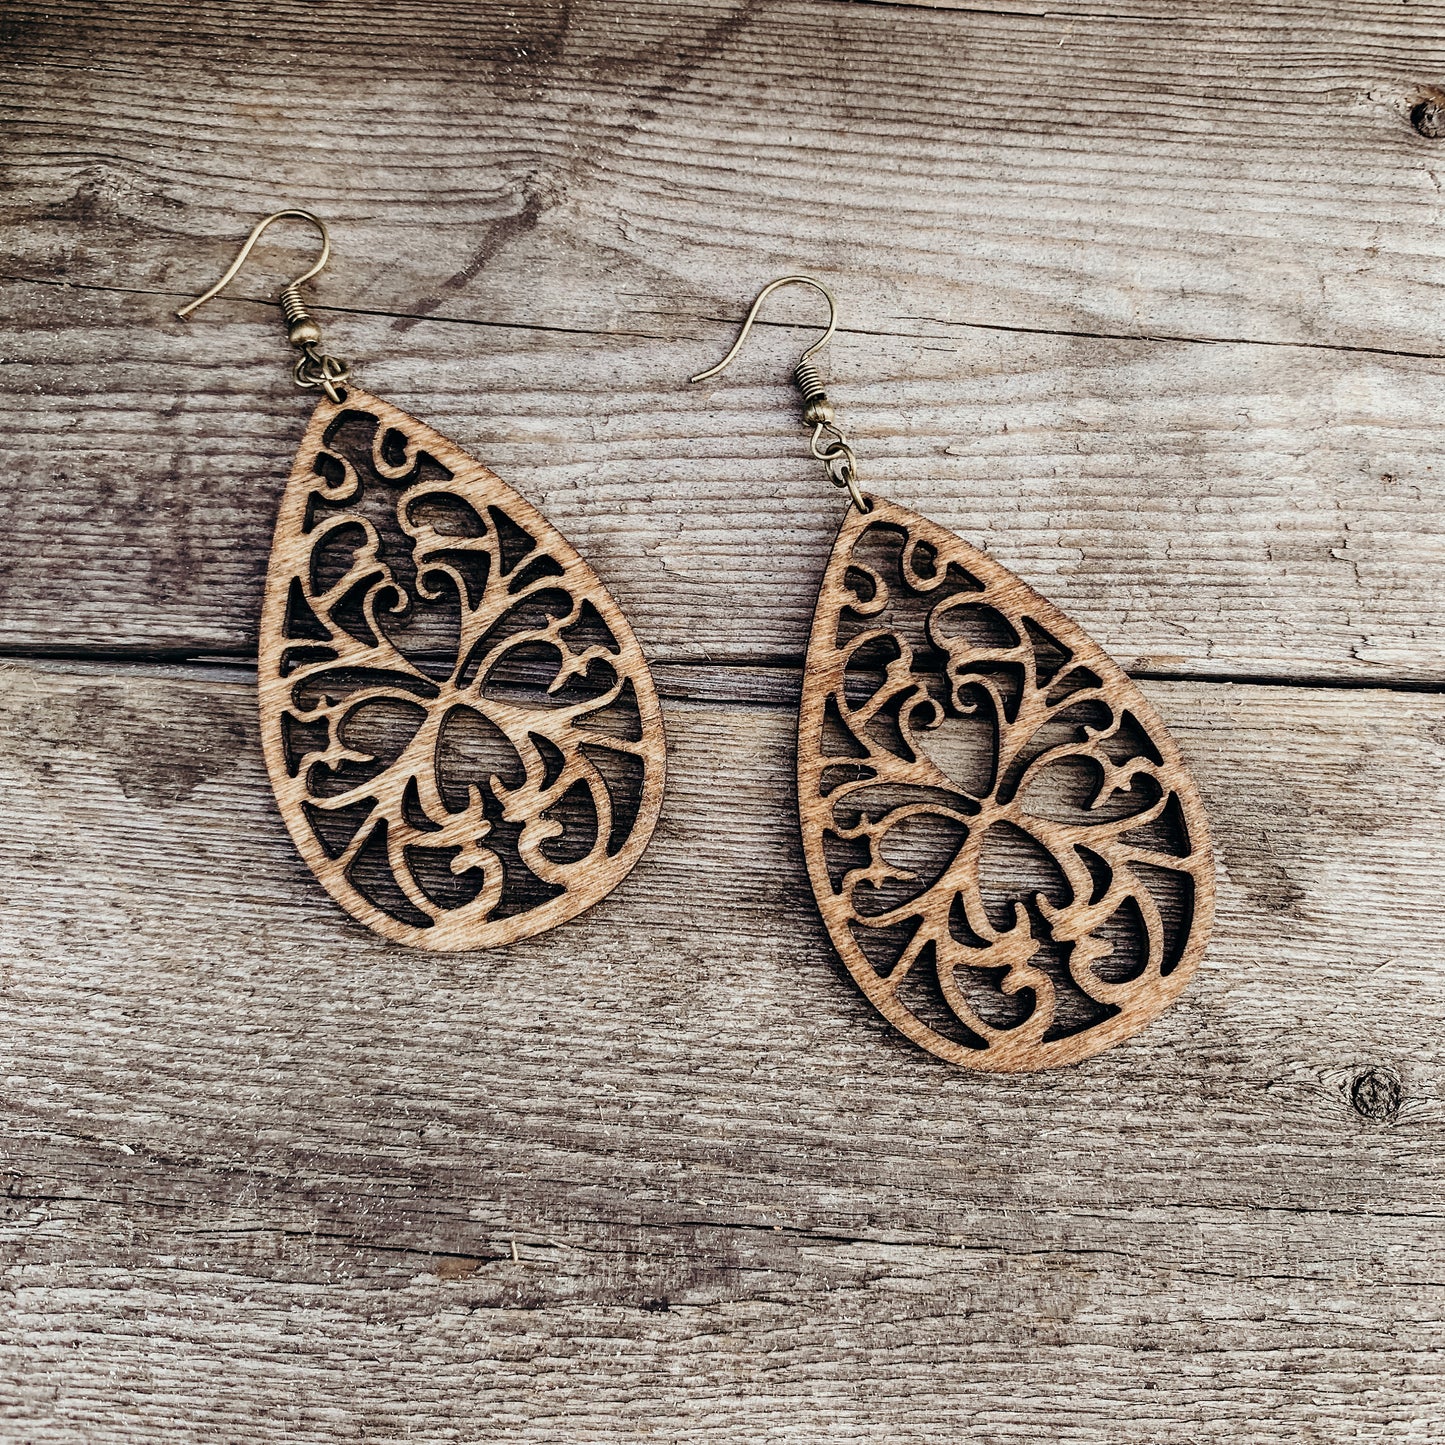 Lightweight Wood Teardrop Boho Earrings | Handcrafted Dark Stained Birch | Antique Bronze Hooks